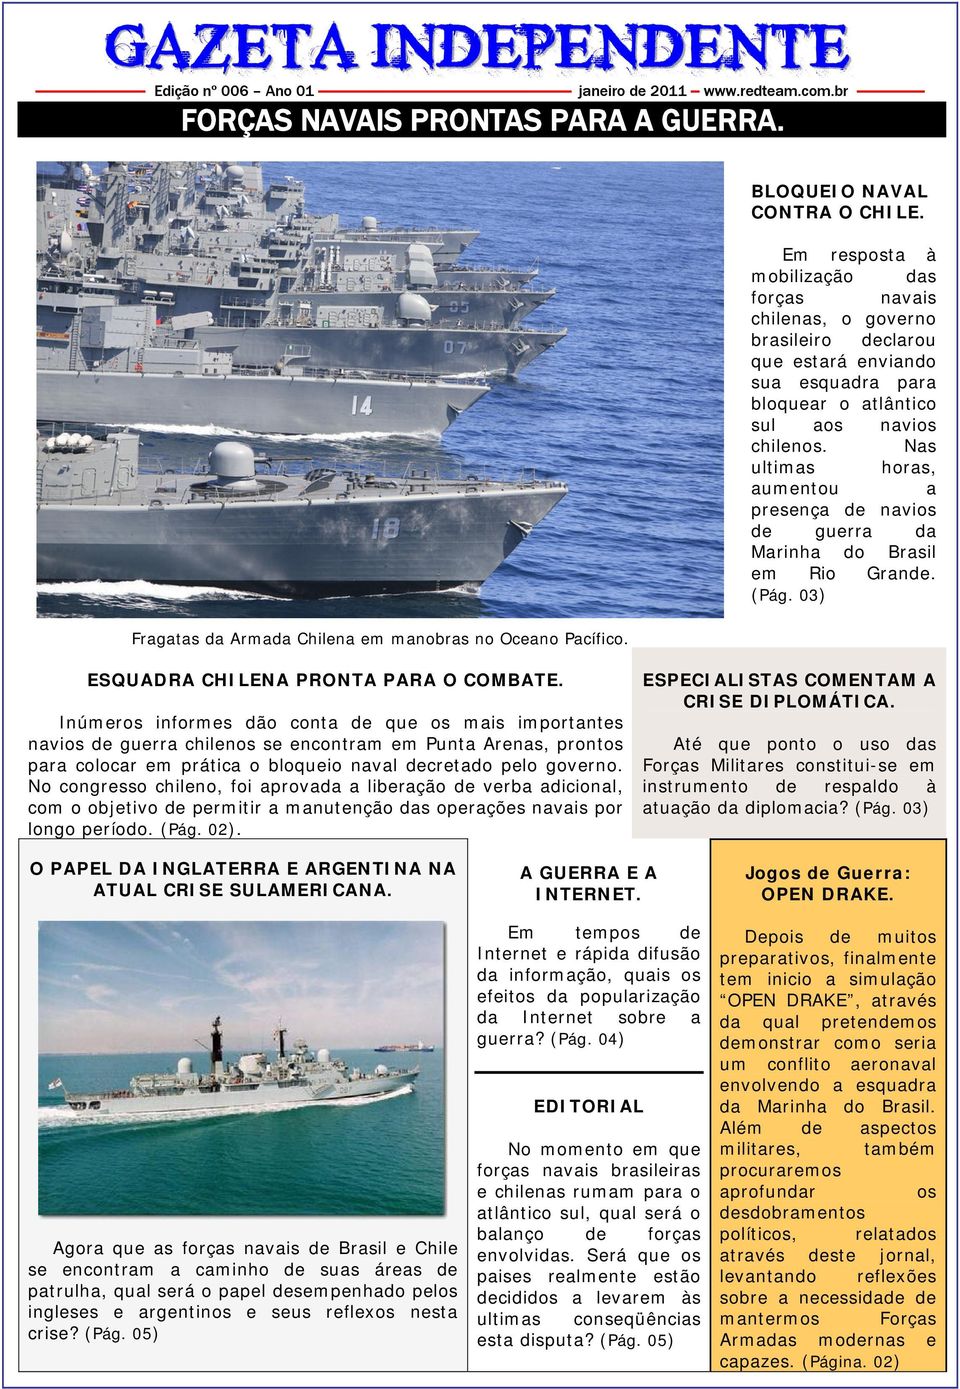 Em resposta à mobilização das forças navais chilenas, o governo brasileiro declarou que estará enviando sua esquadra para bloquear o atlântico sul aos navios chilenos.